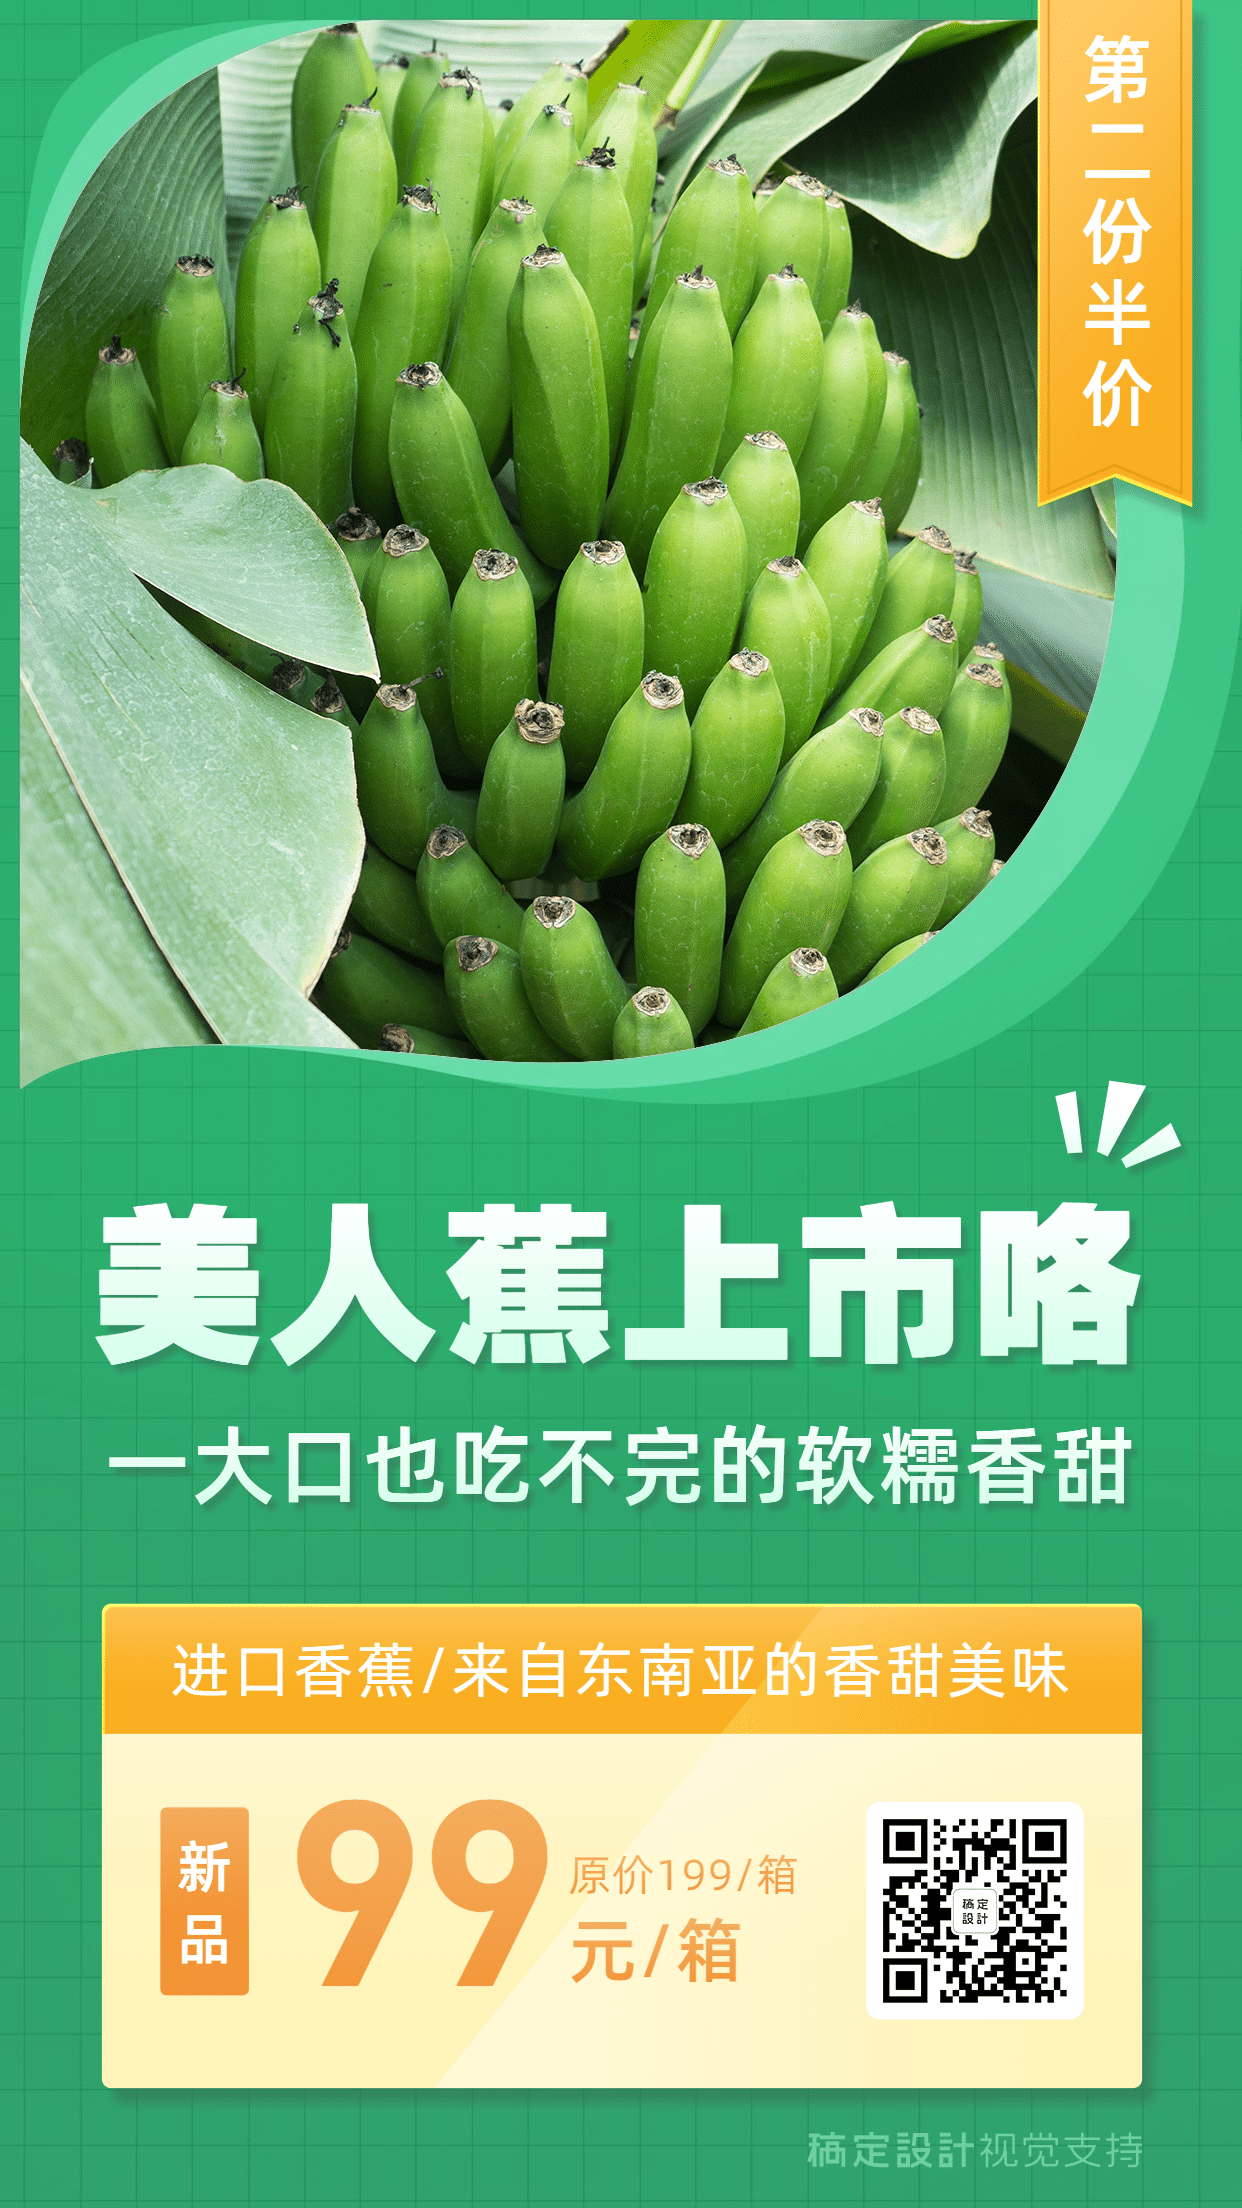 绿色产品介绍生鲜水果营销海报预览效果